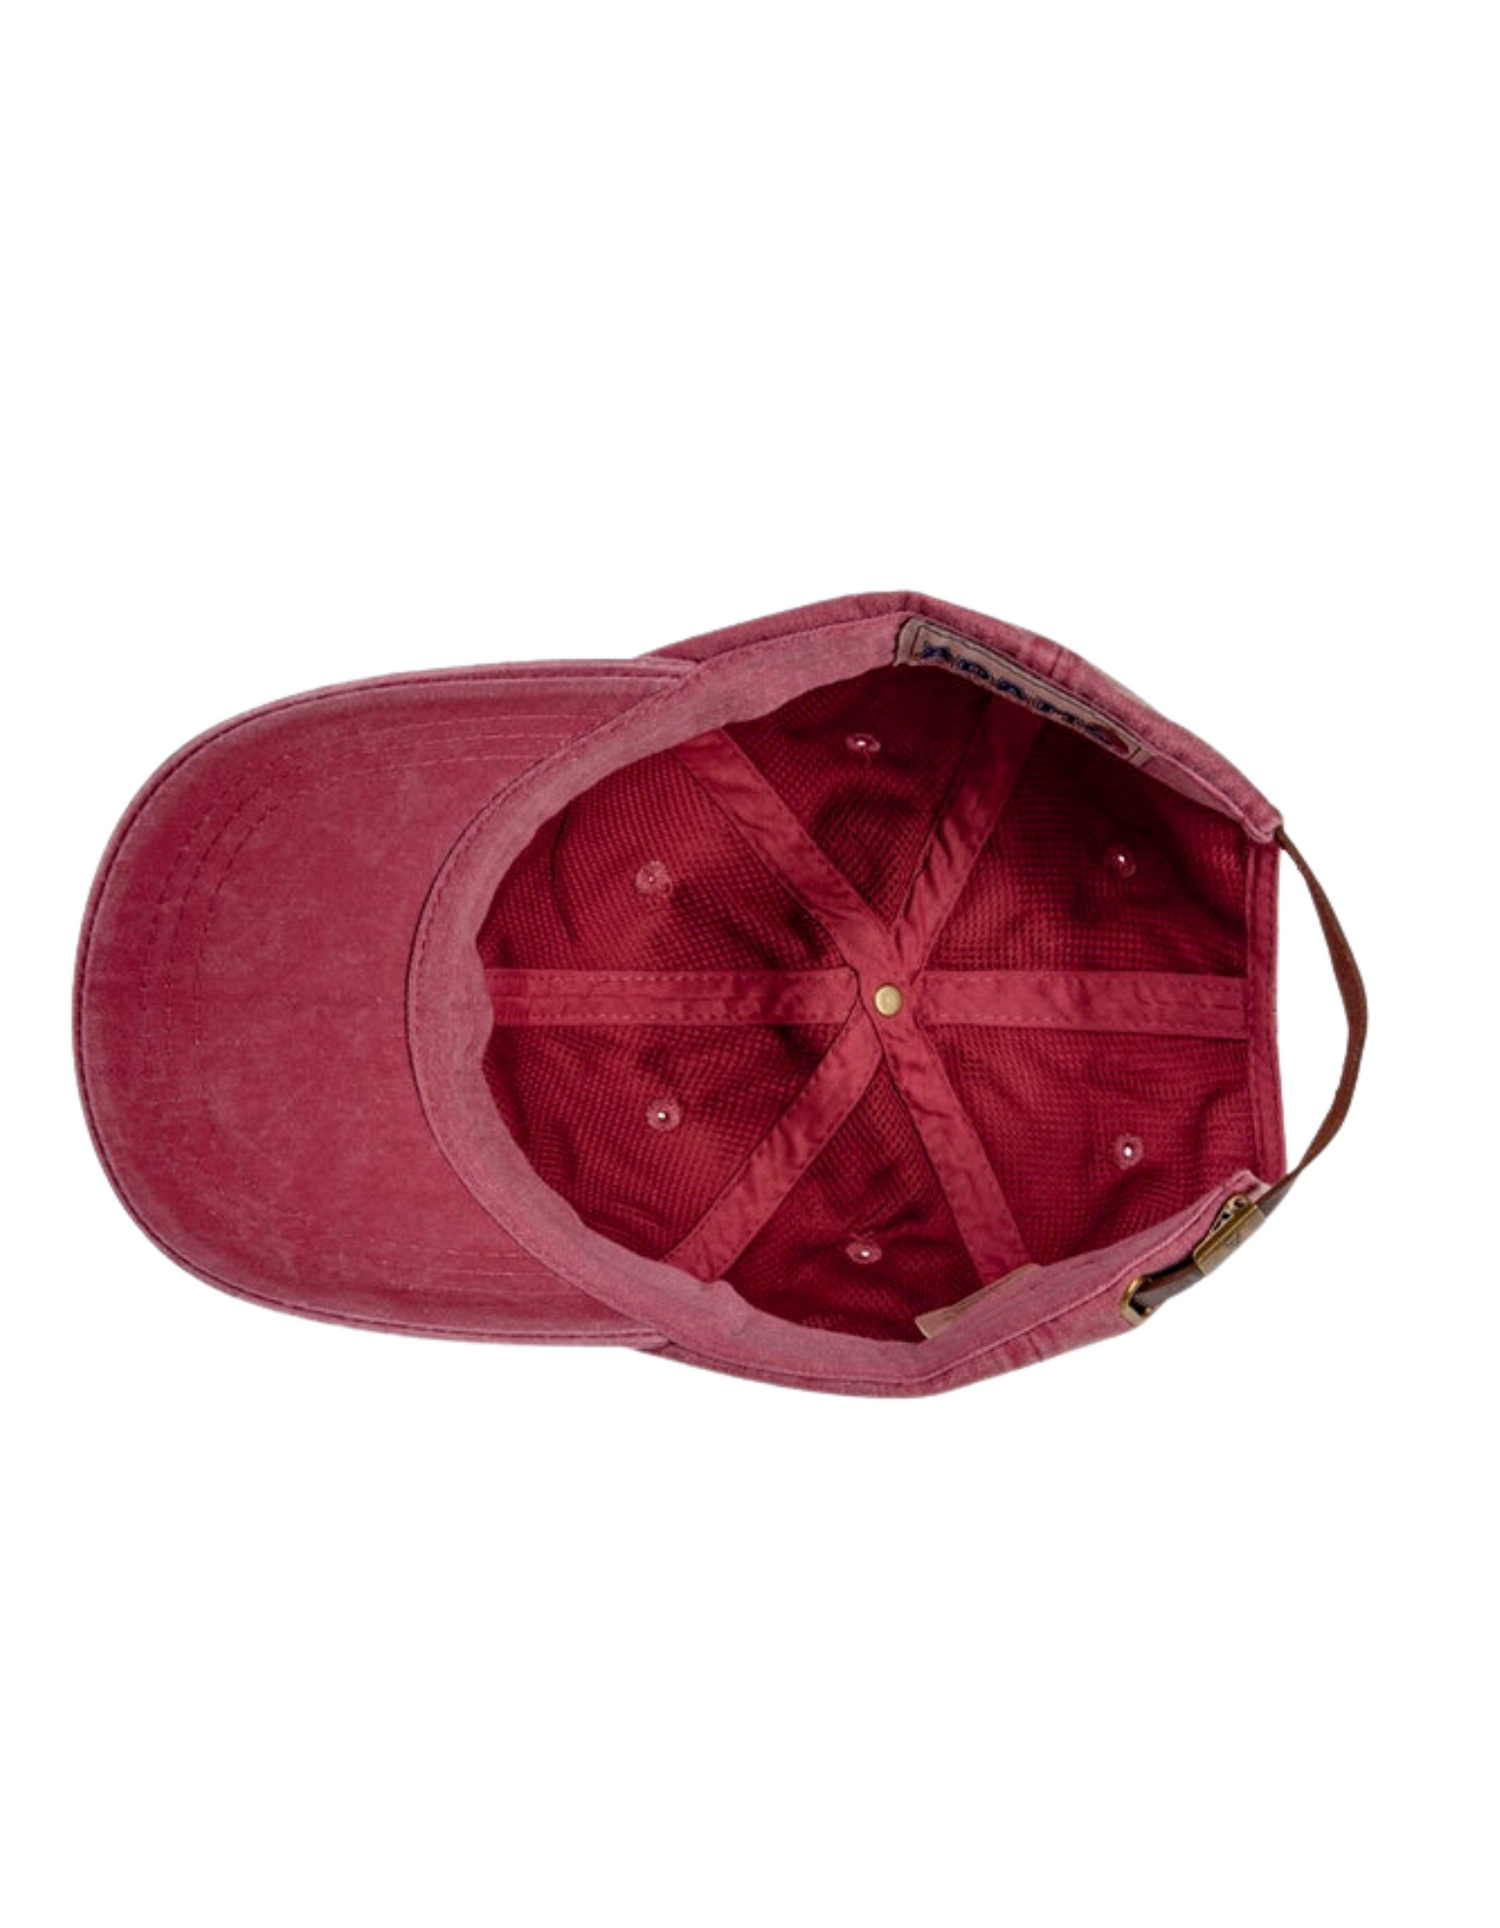 nautical red cap underside